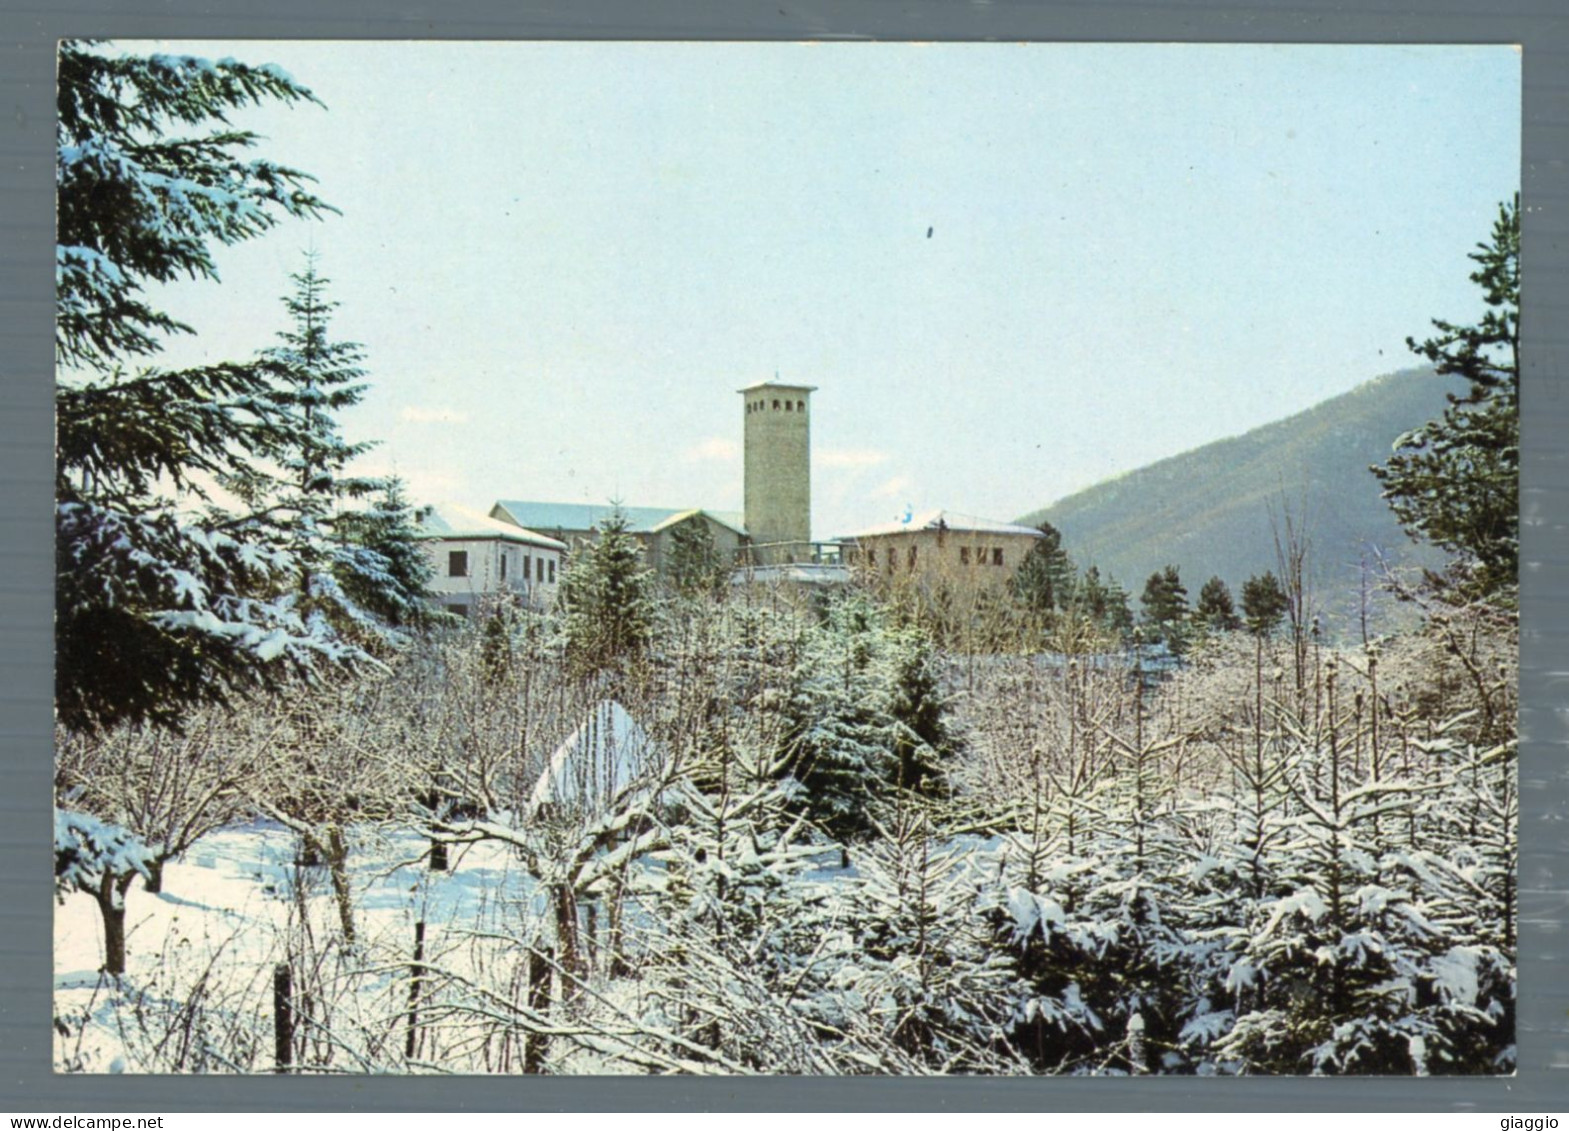 °°° Cartolina - Altipiani Di Arcinazzo Paesaggio Invernale - Nuova °°° - Frosinone